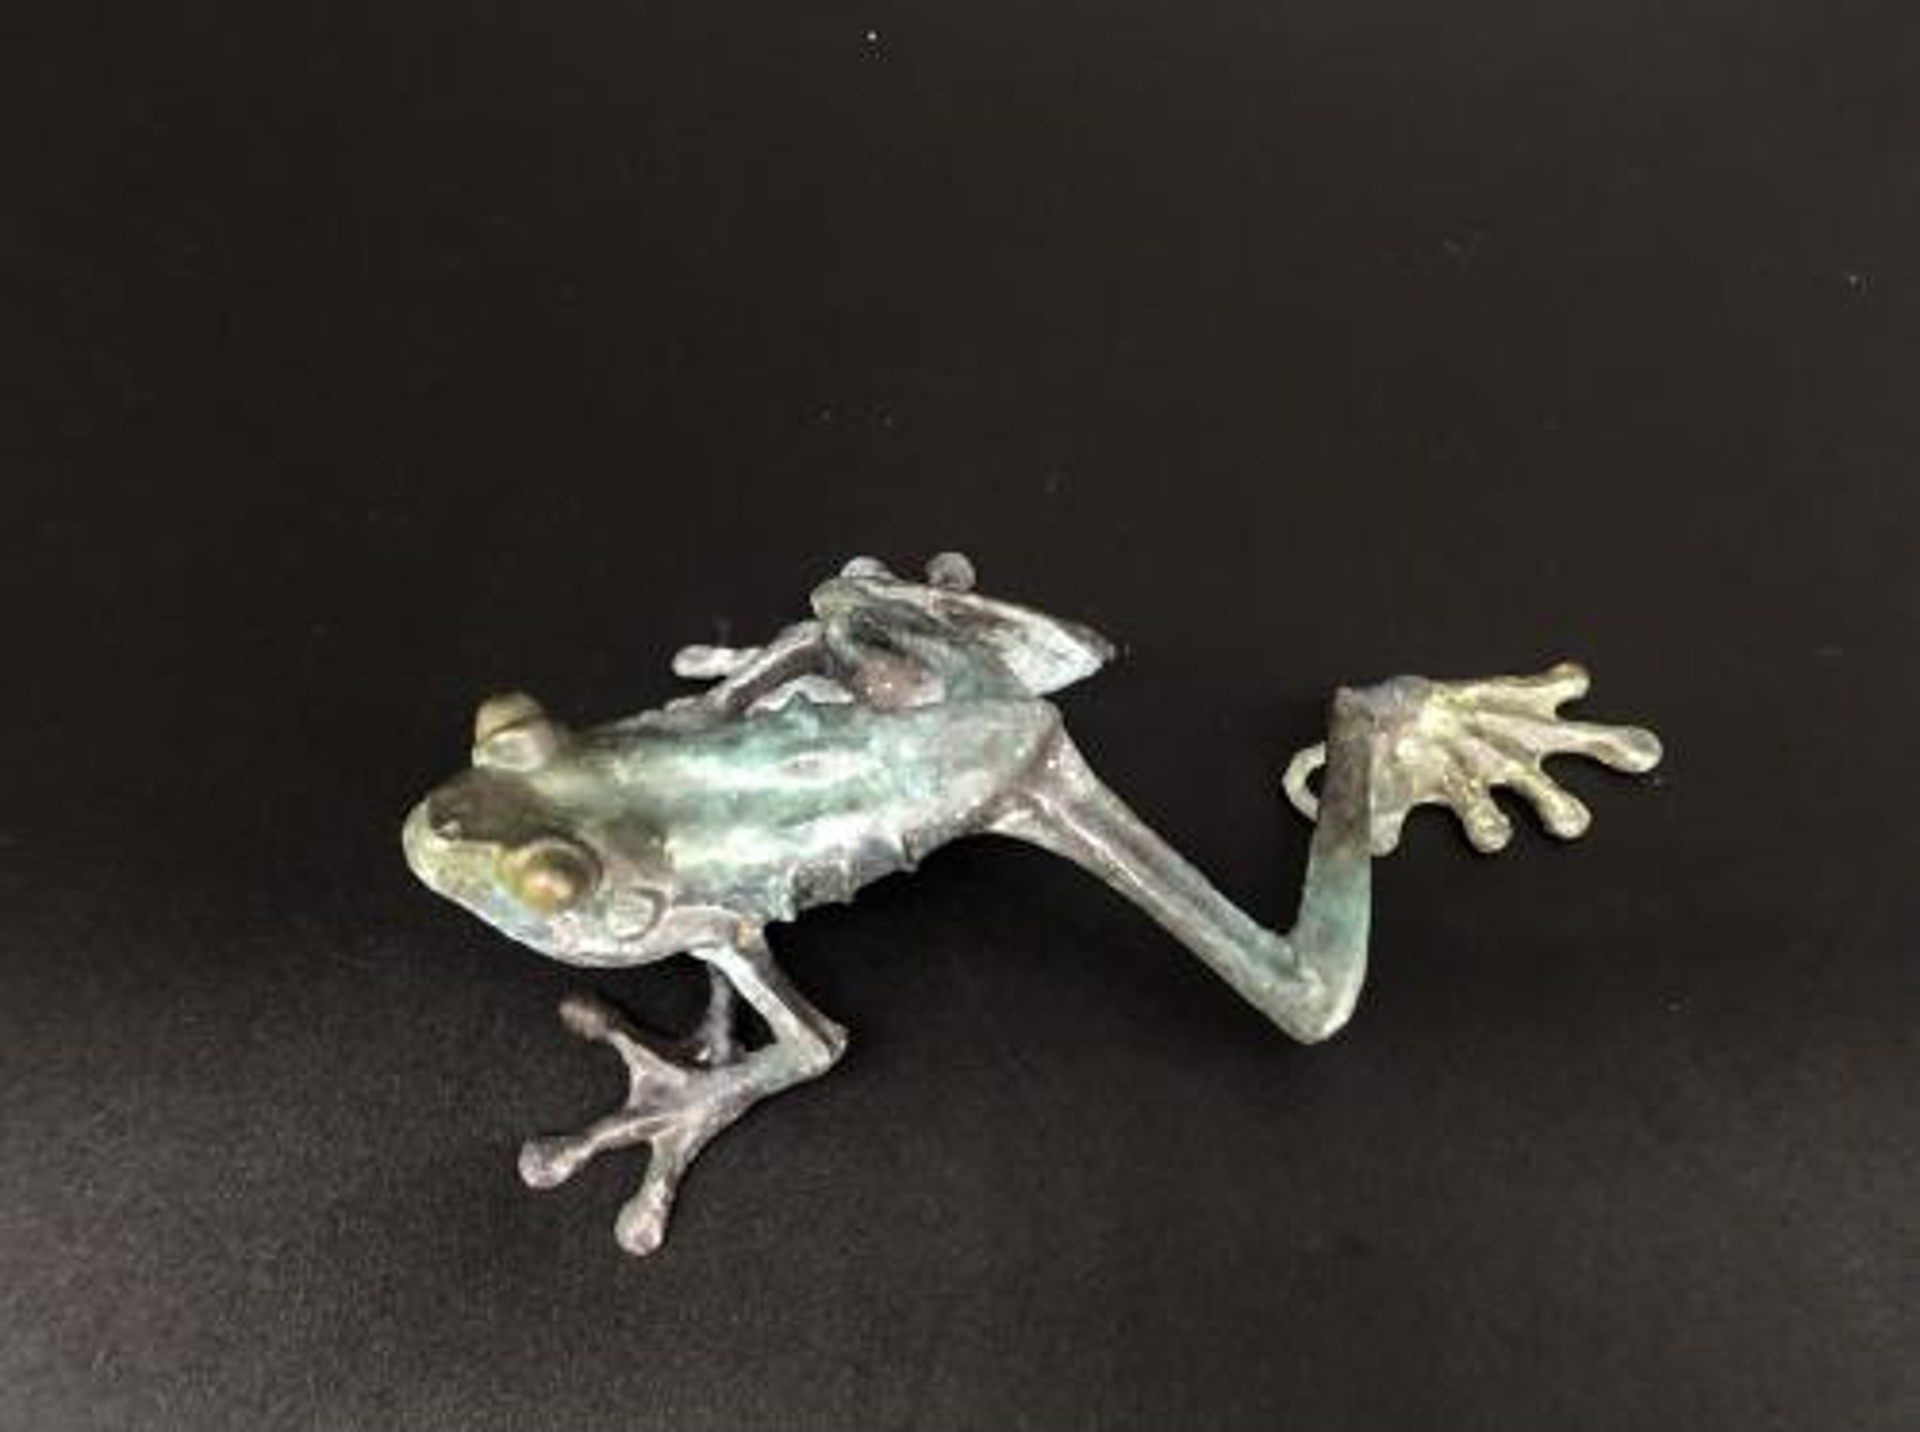 Frog C by Dan Chen